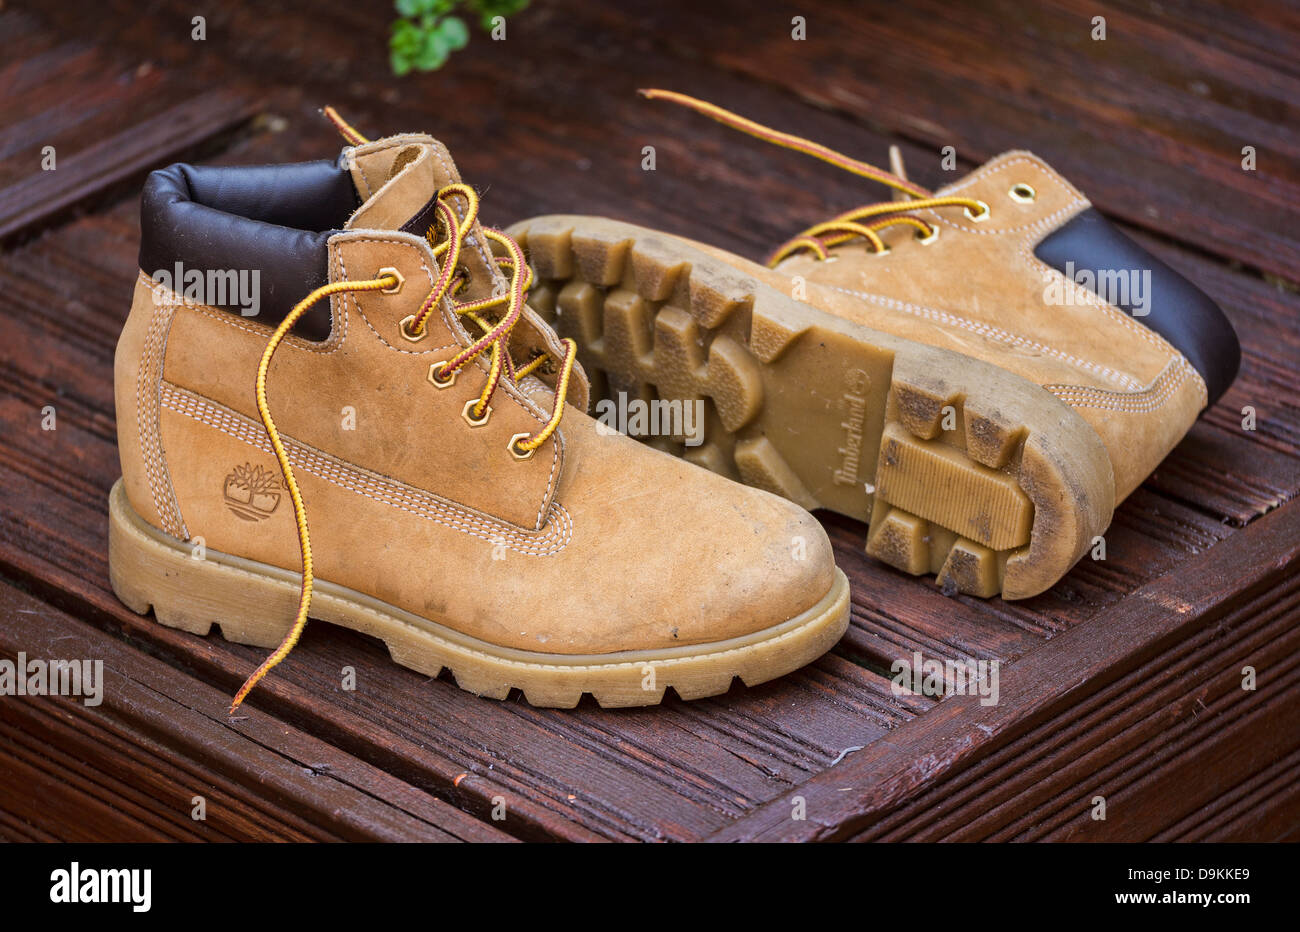 Timberland boots immagini e fotografie stock ad alta risoluzione - Alamy